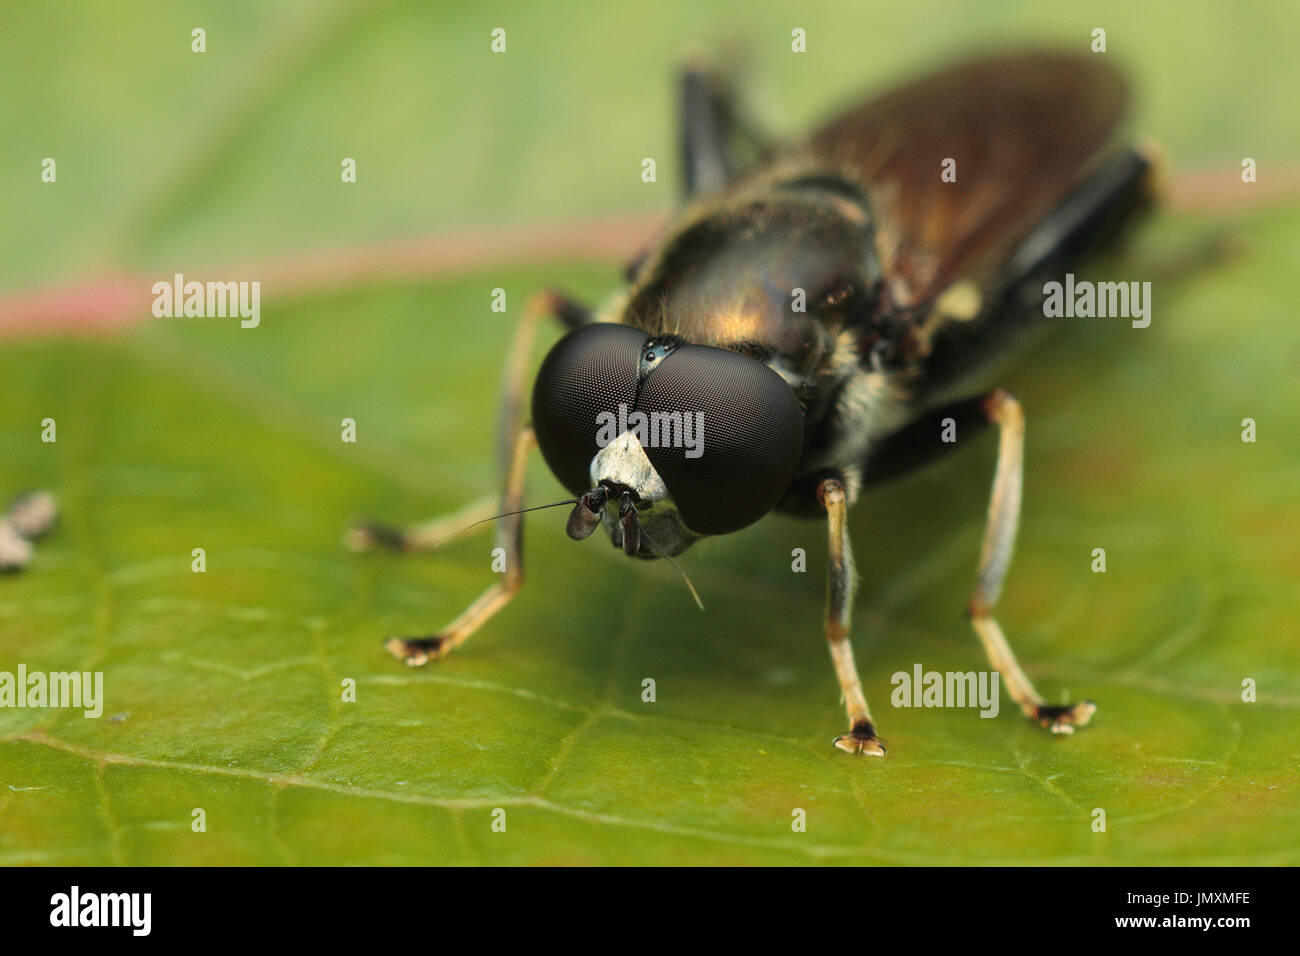 Macro photographie d'insectes Banque D'Images